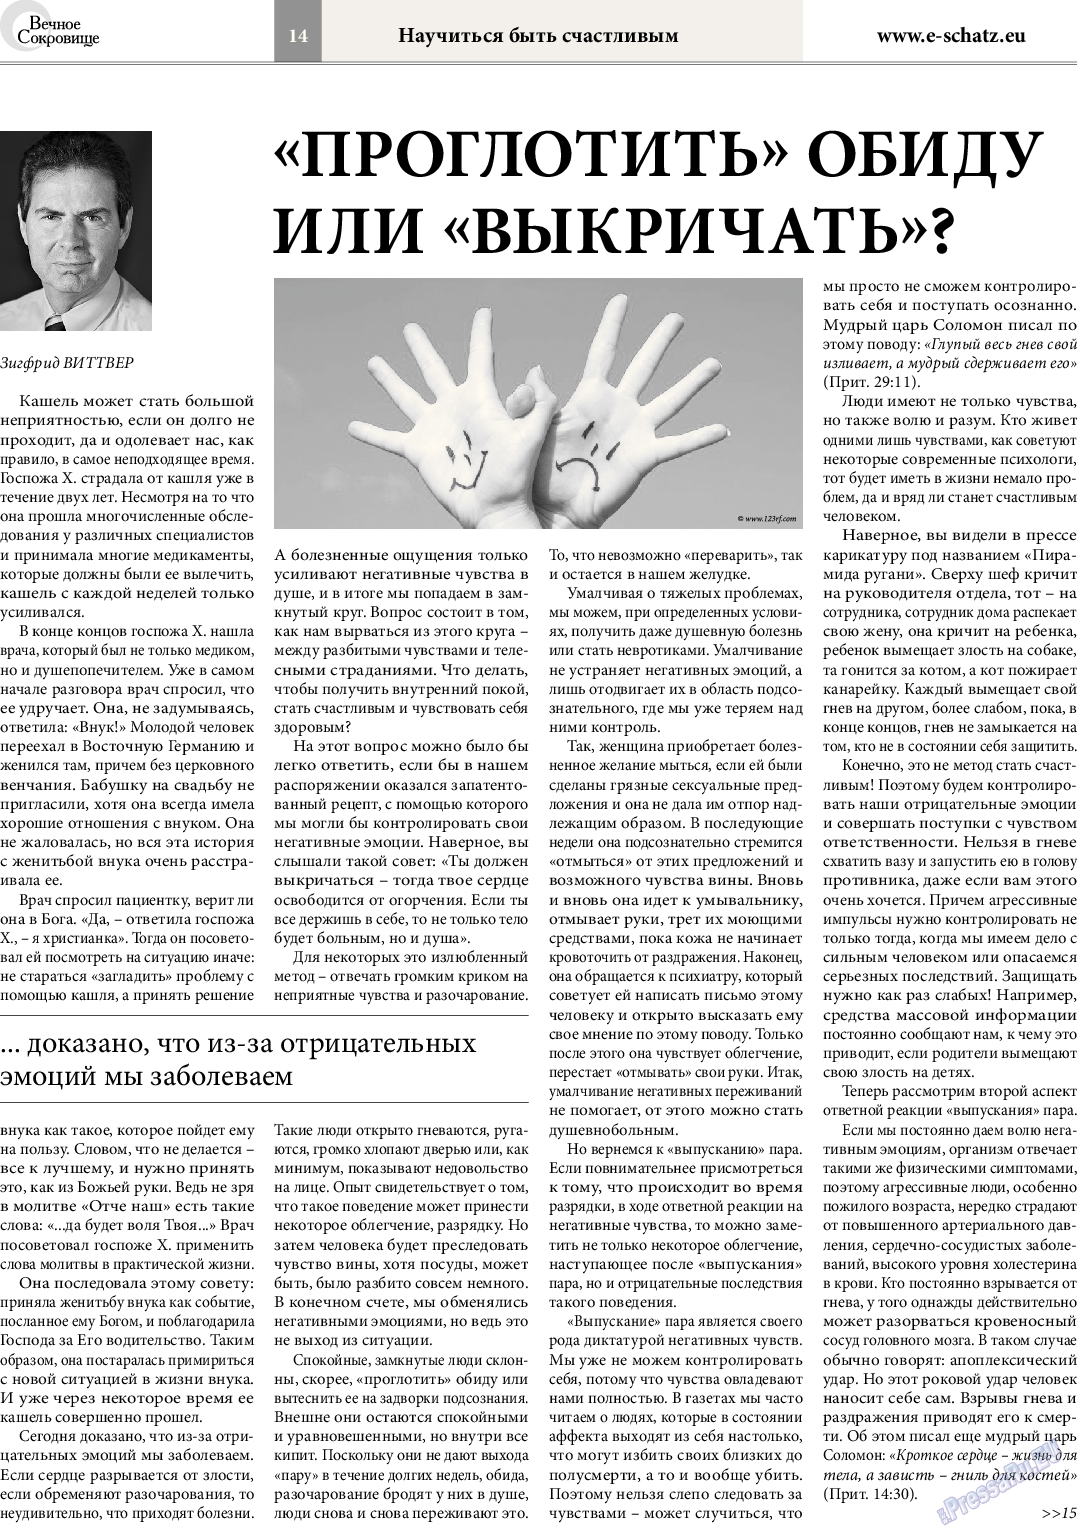 Вечное сокровище (газета). 2014 год, номер 4, стр. 14